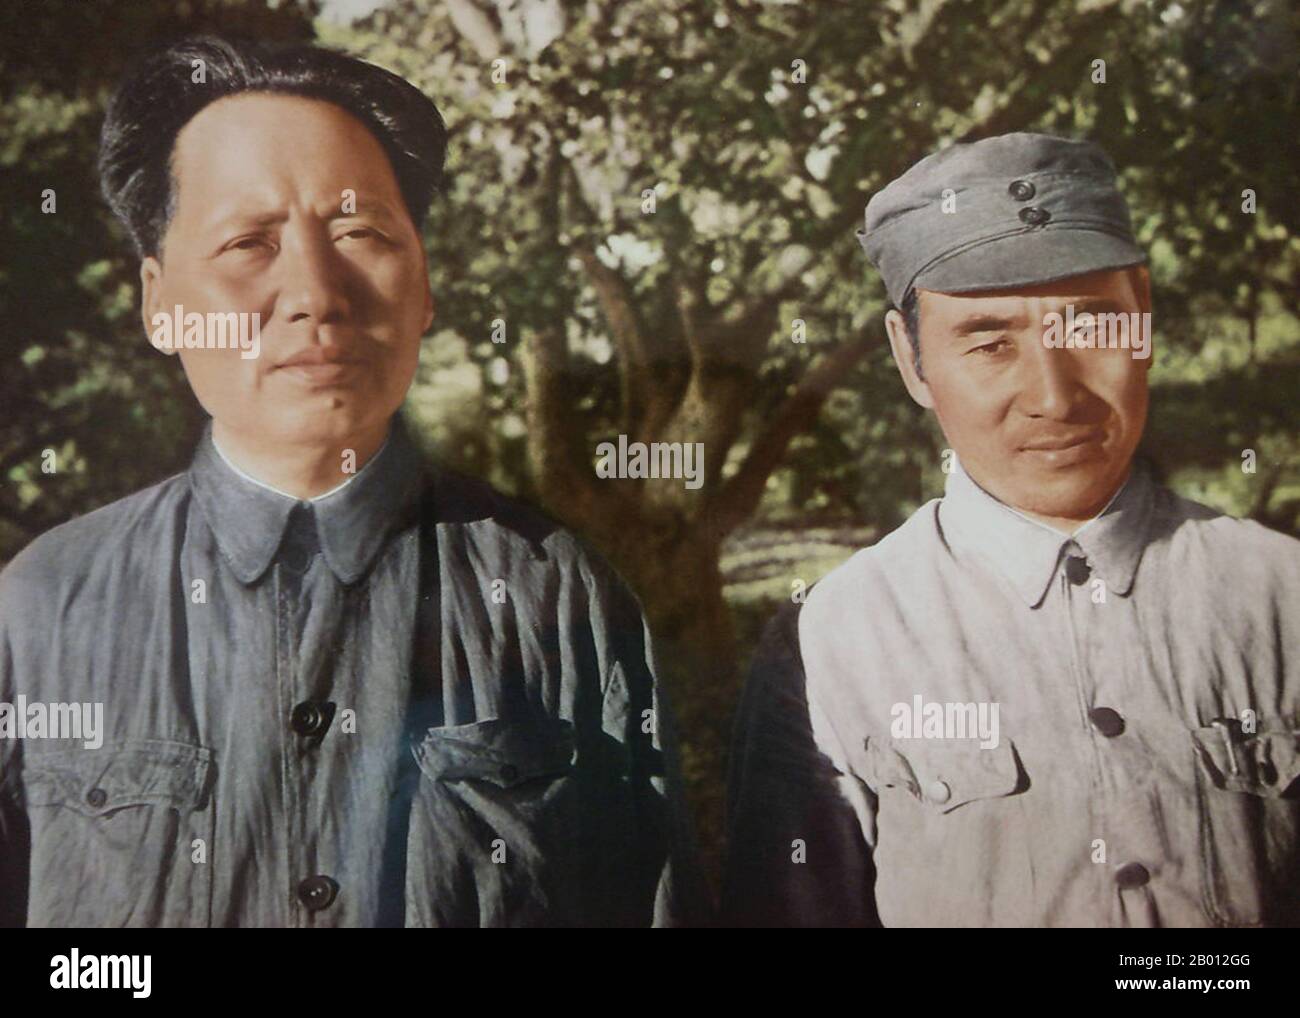 Chine : LIN Biao (1907-1971) avec le président Mao Tsé-toung, c. 1949. Lin Yurong, mieux connu par le nom de guerre Lin Biao (5 décembre 1907 – 13 septembre 1971) était un chef militaire communiste chinois qui a joué un rôle déterminant dans la victoire communiste de la guerre civile chinoise, en particulier dans le nord-est de la Chine, Et c'est le général qui a dirigé l'Armée populaire de libération à Beijing en 1949. Il s'est abstenu de devenir un acteur majeur de la politique jusqu'à ce qu'il se soit hissé au premier plan pendant la Révolution culturelle, grimpant aussi haut que le second responsable et le successeur désigné et constitutionnel de Mao Zedong. Banque D'Images